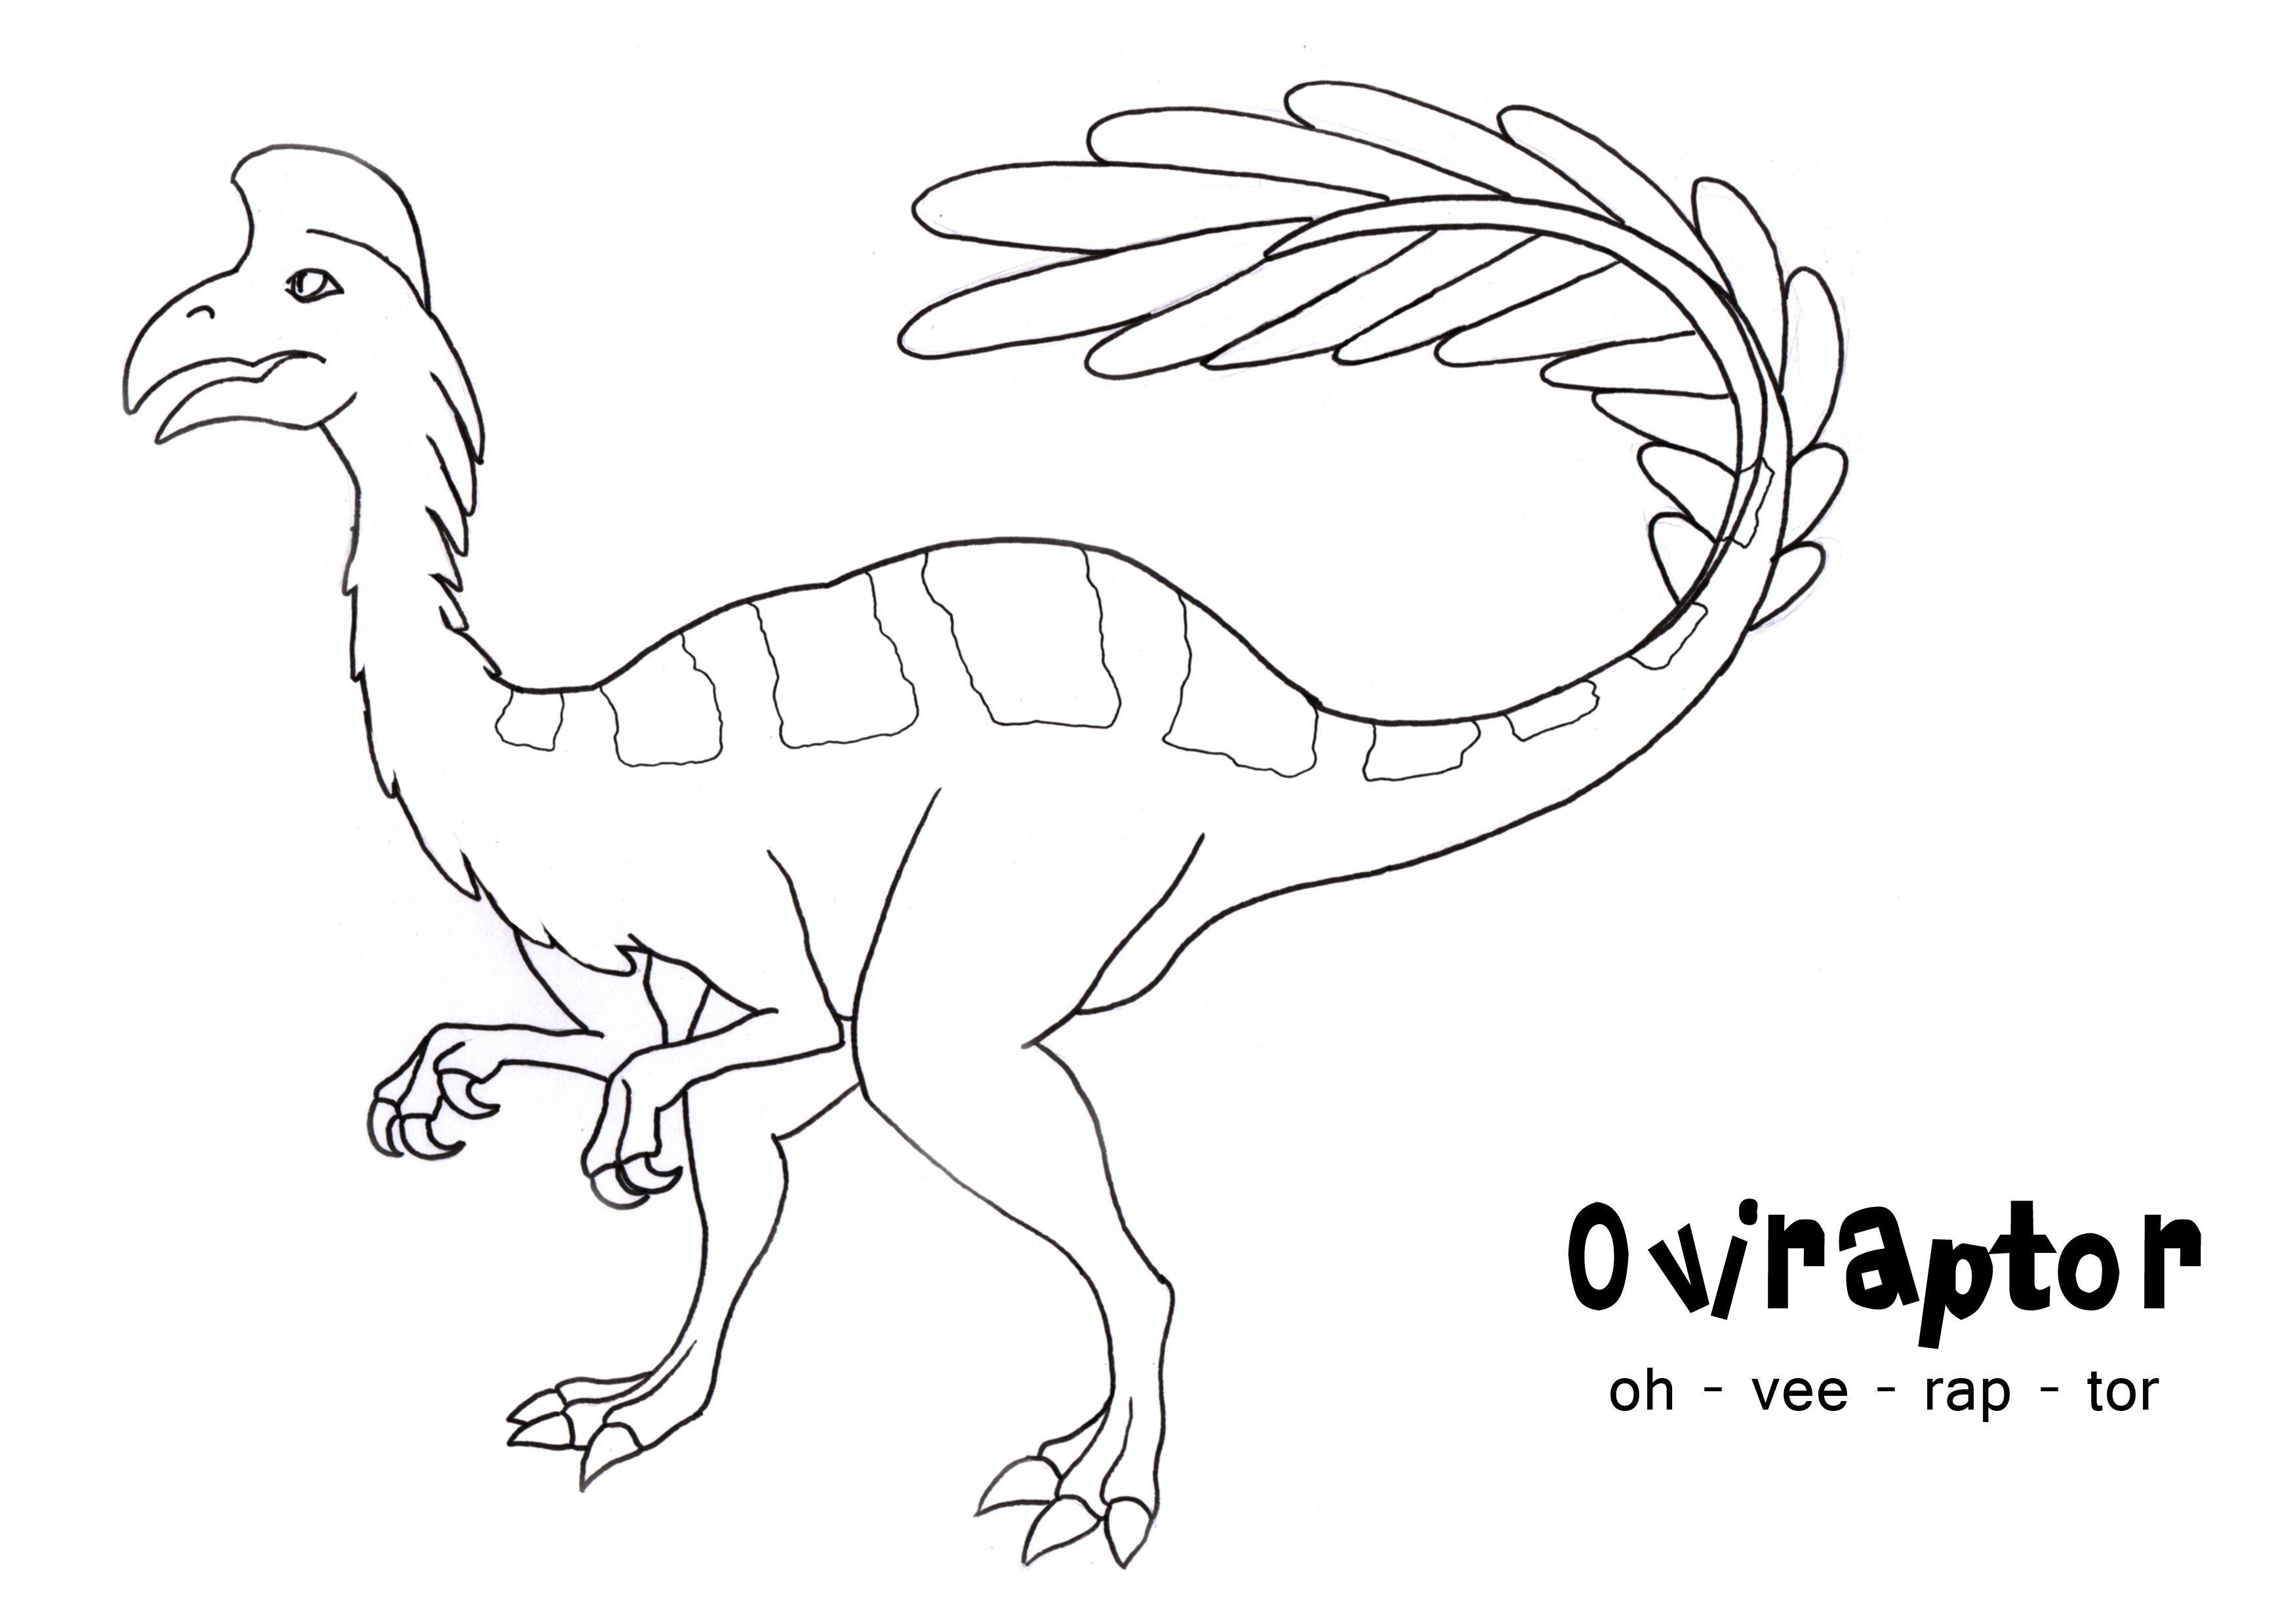 偷蛋龙 (Oviraptor) 是始祖鸟属的羽毛恐龙属